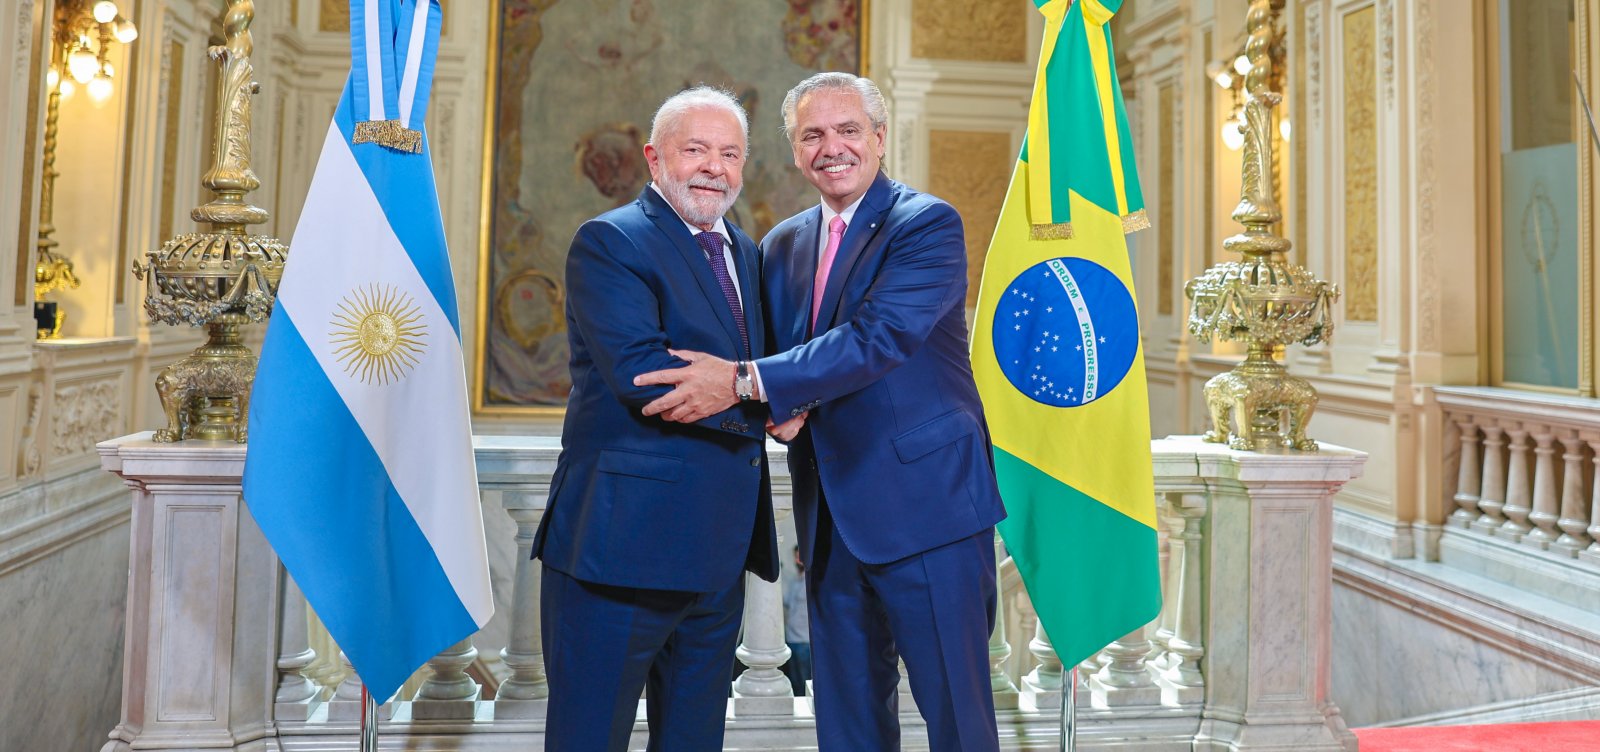 Presidente da Argentina desembarca no Brasil para se encontrar com Lula nesta segunda